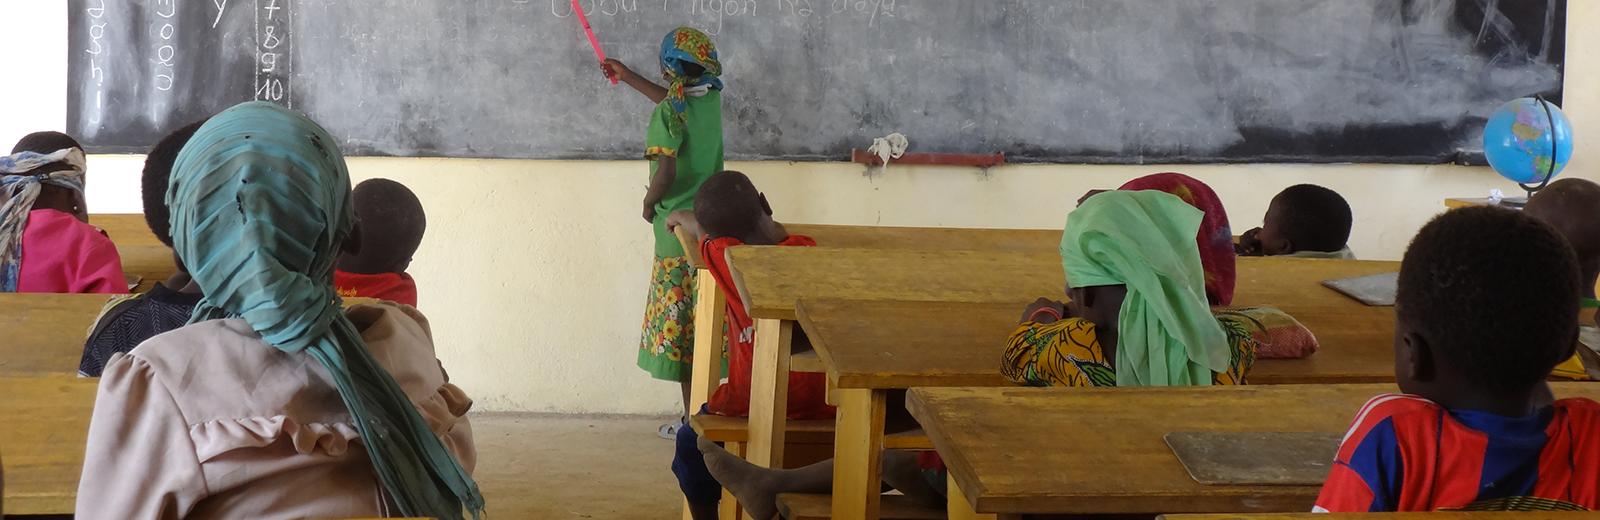 Séance de lecture en langue nationale, à l’école de Bourbo, dans la province du Moyen-Chari (Tchad) © Enfants du Monde (Mathieu Savoy)